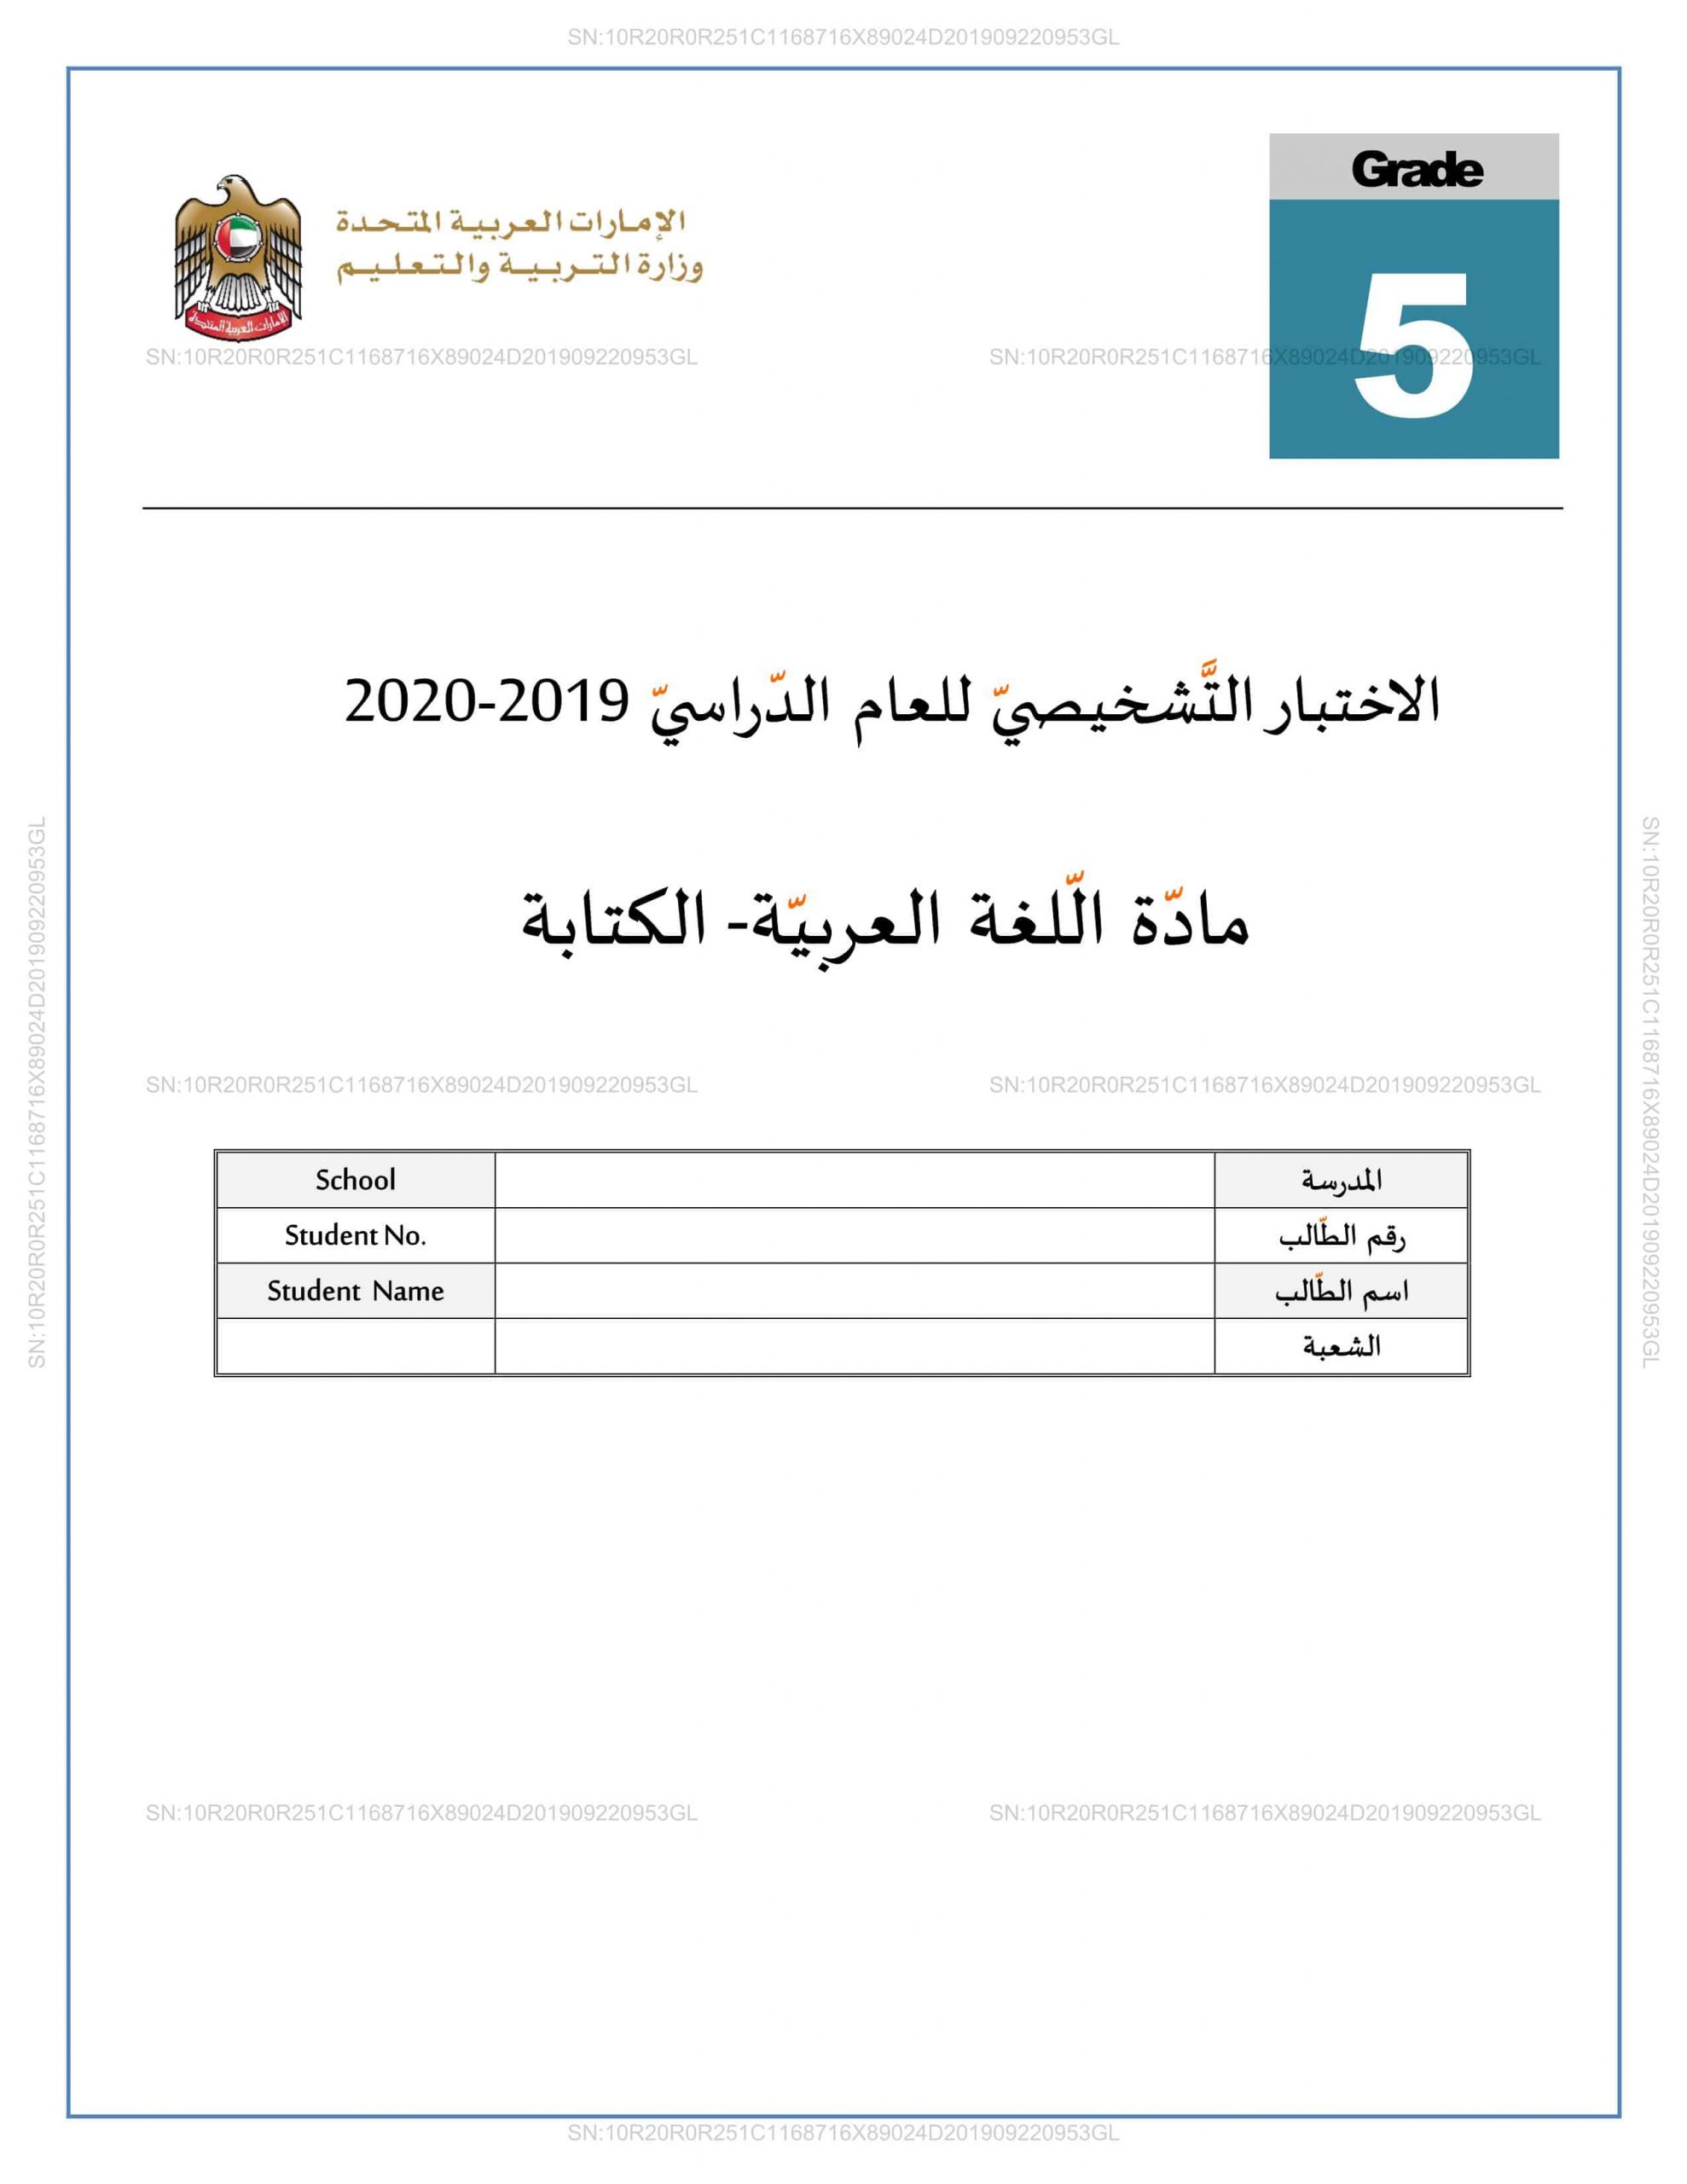 اختبار التشخيصي الكتابة 2019-2020 الصف الخامس مادة اللغة العربية